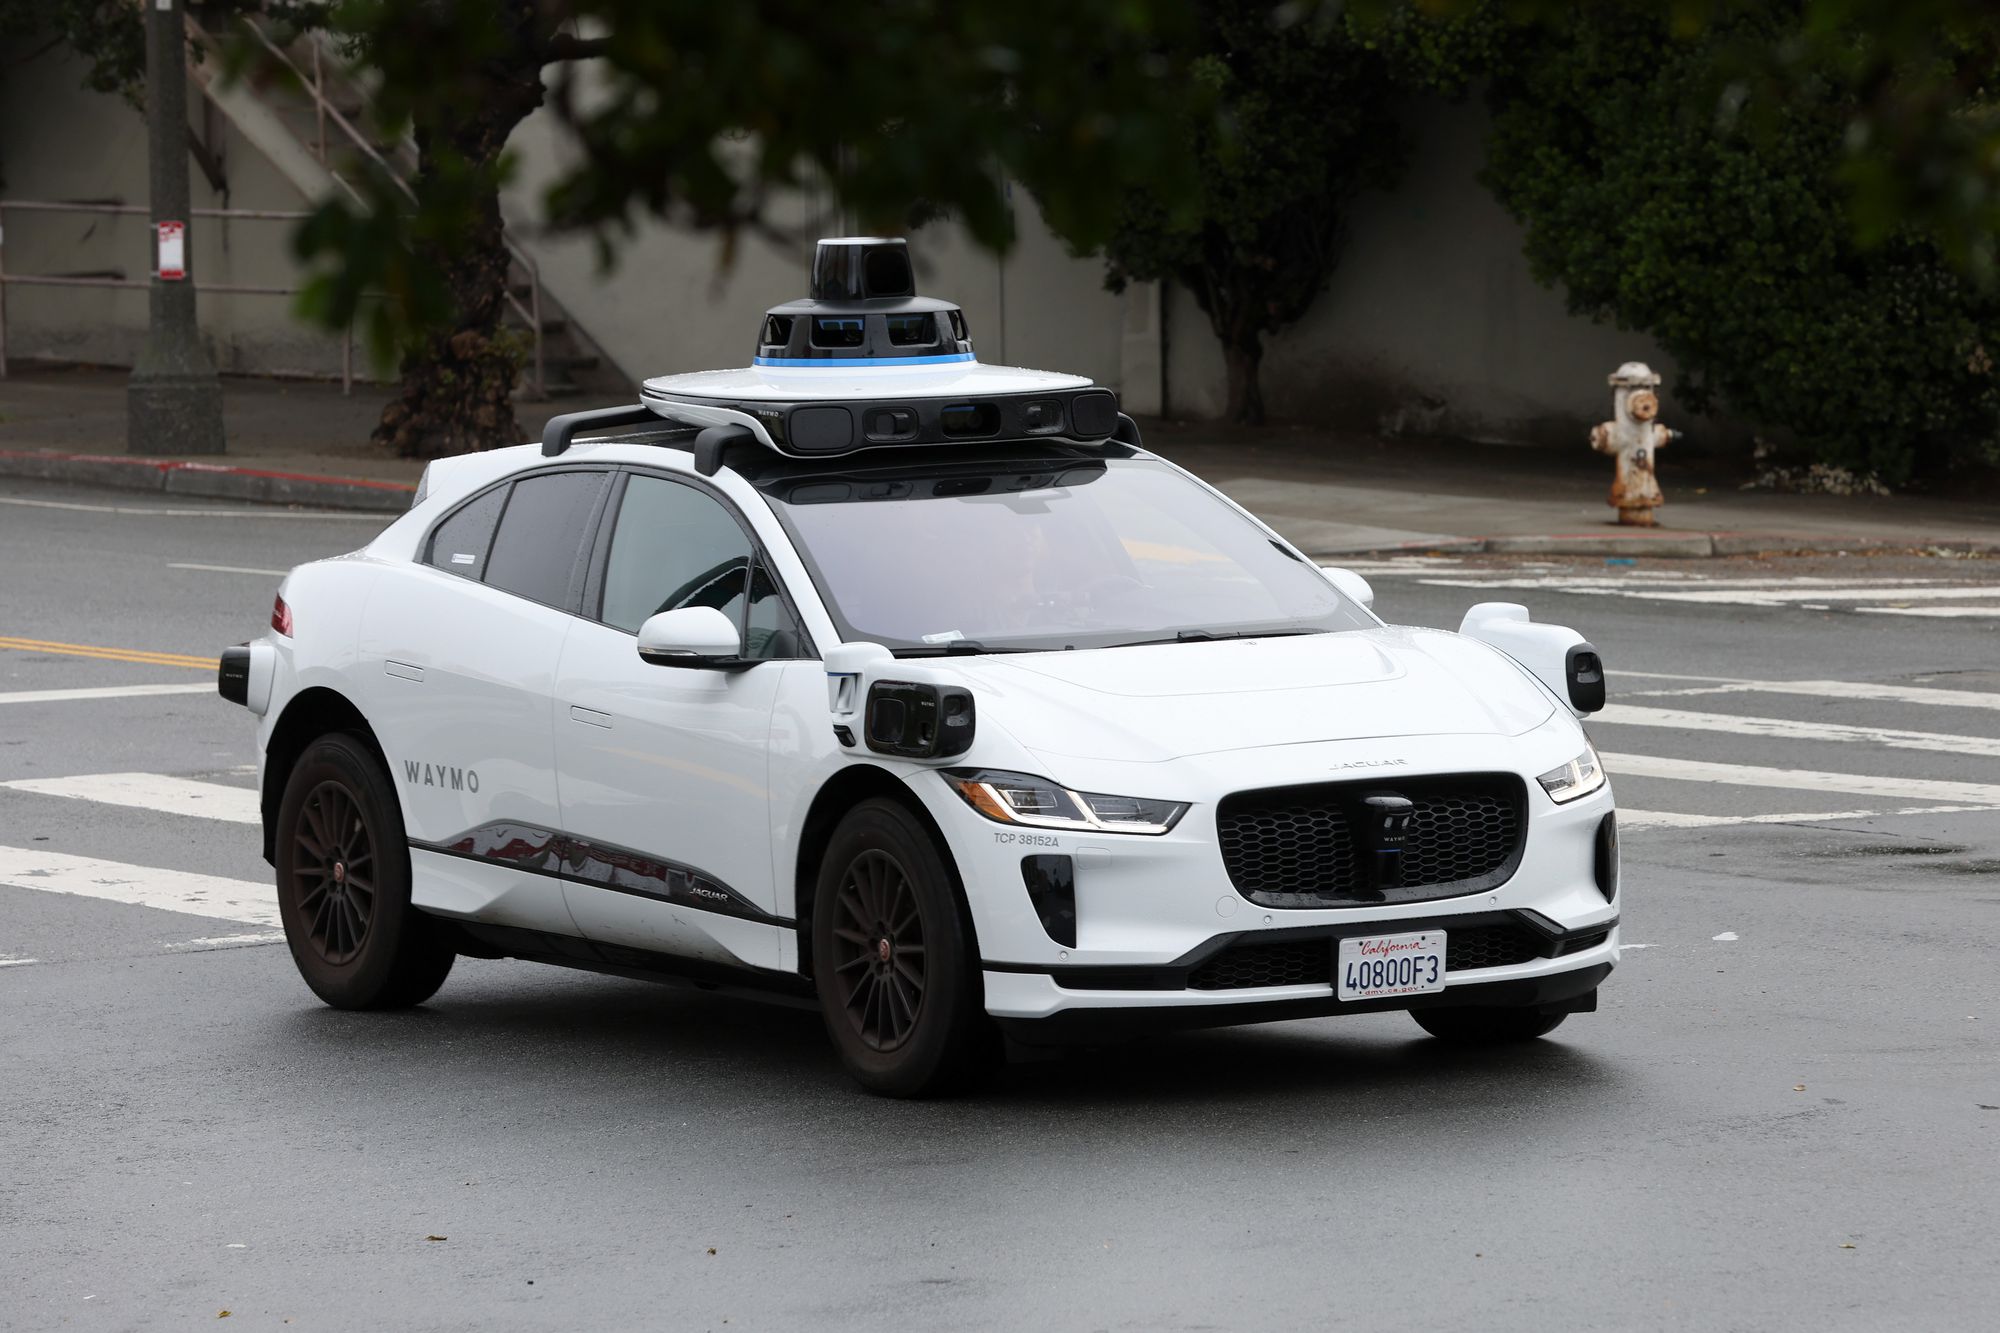 Shërbimi “robotaxi pa shofer” i Waymo tanimë i disponueshëm për të gjithë në San Francisko!